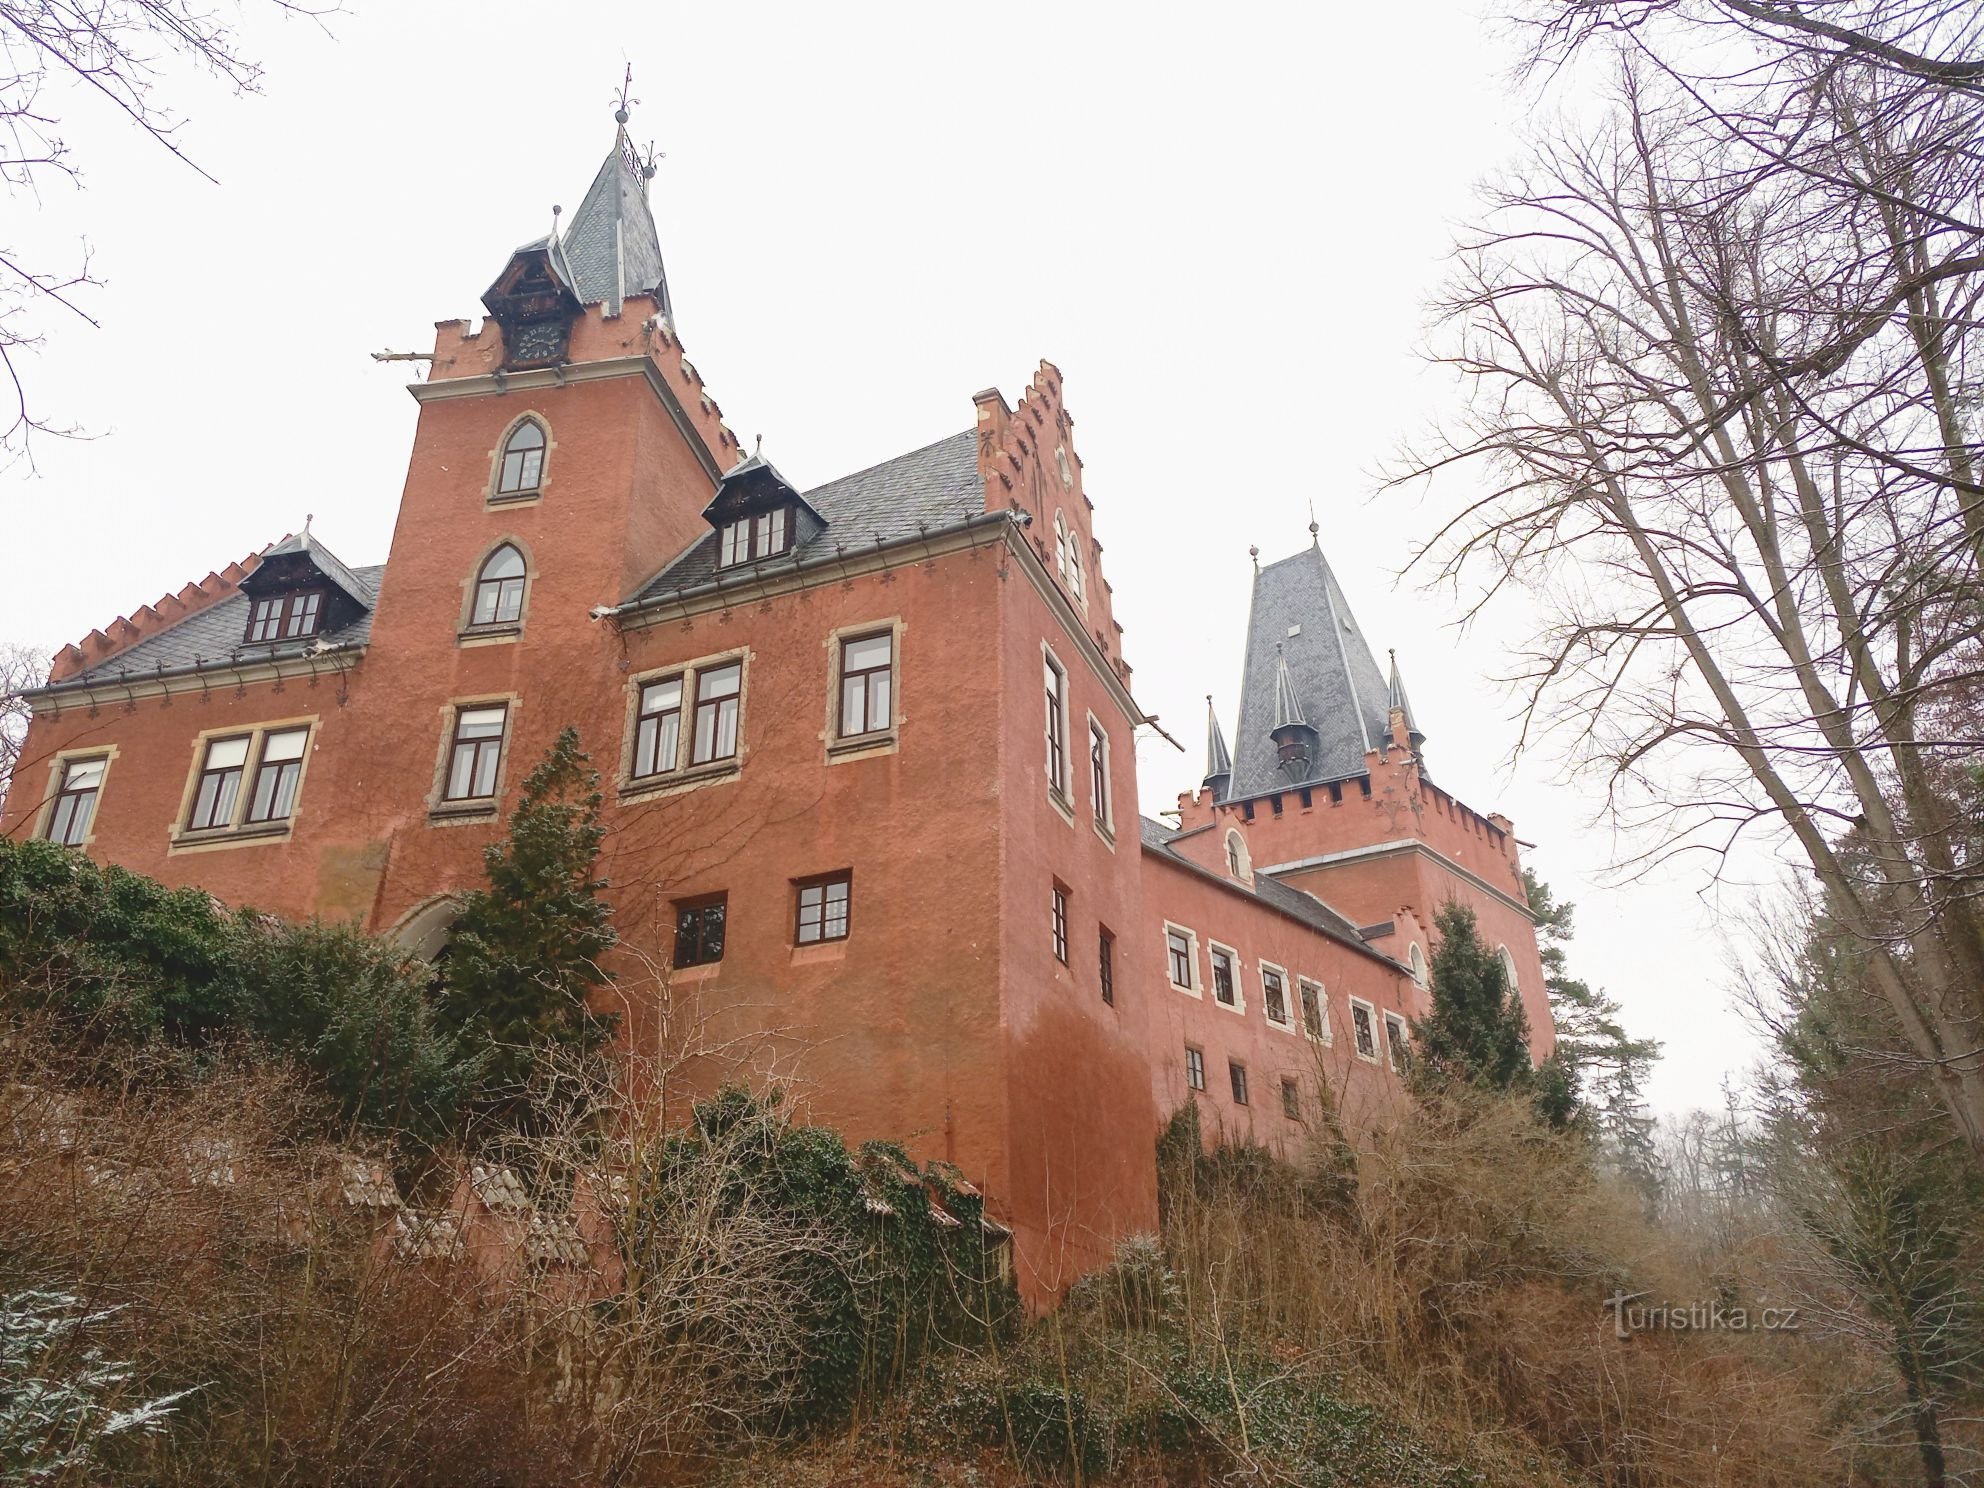 3. Castelul Červený Hrádek a fost numit probabil după acoperirea sau culoarea tencuielii